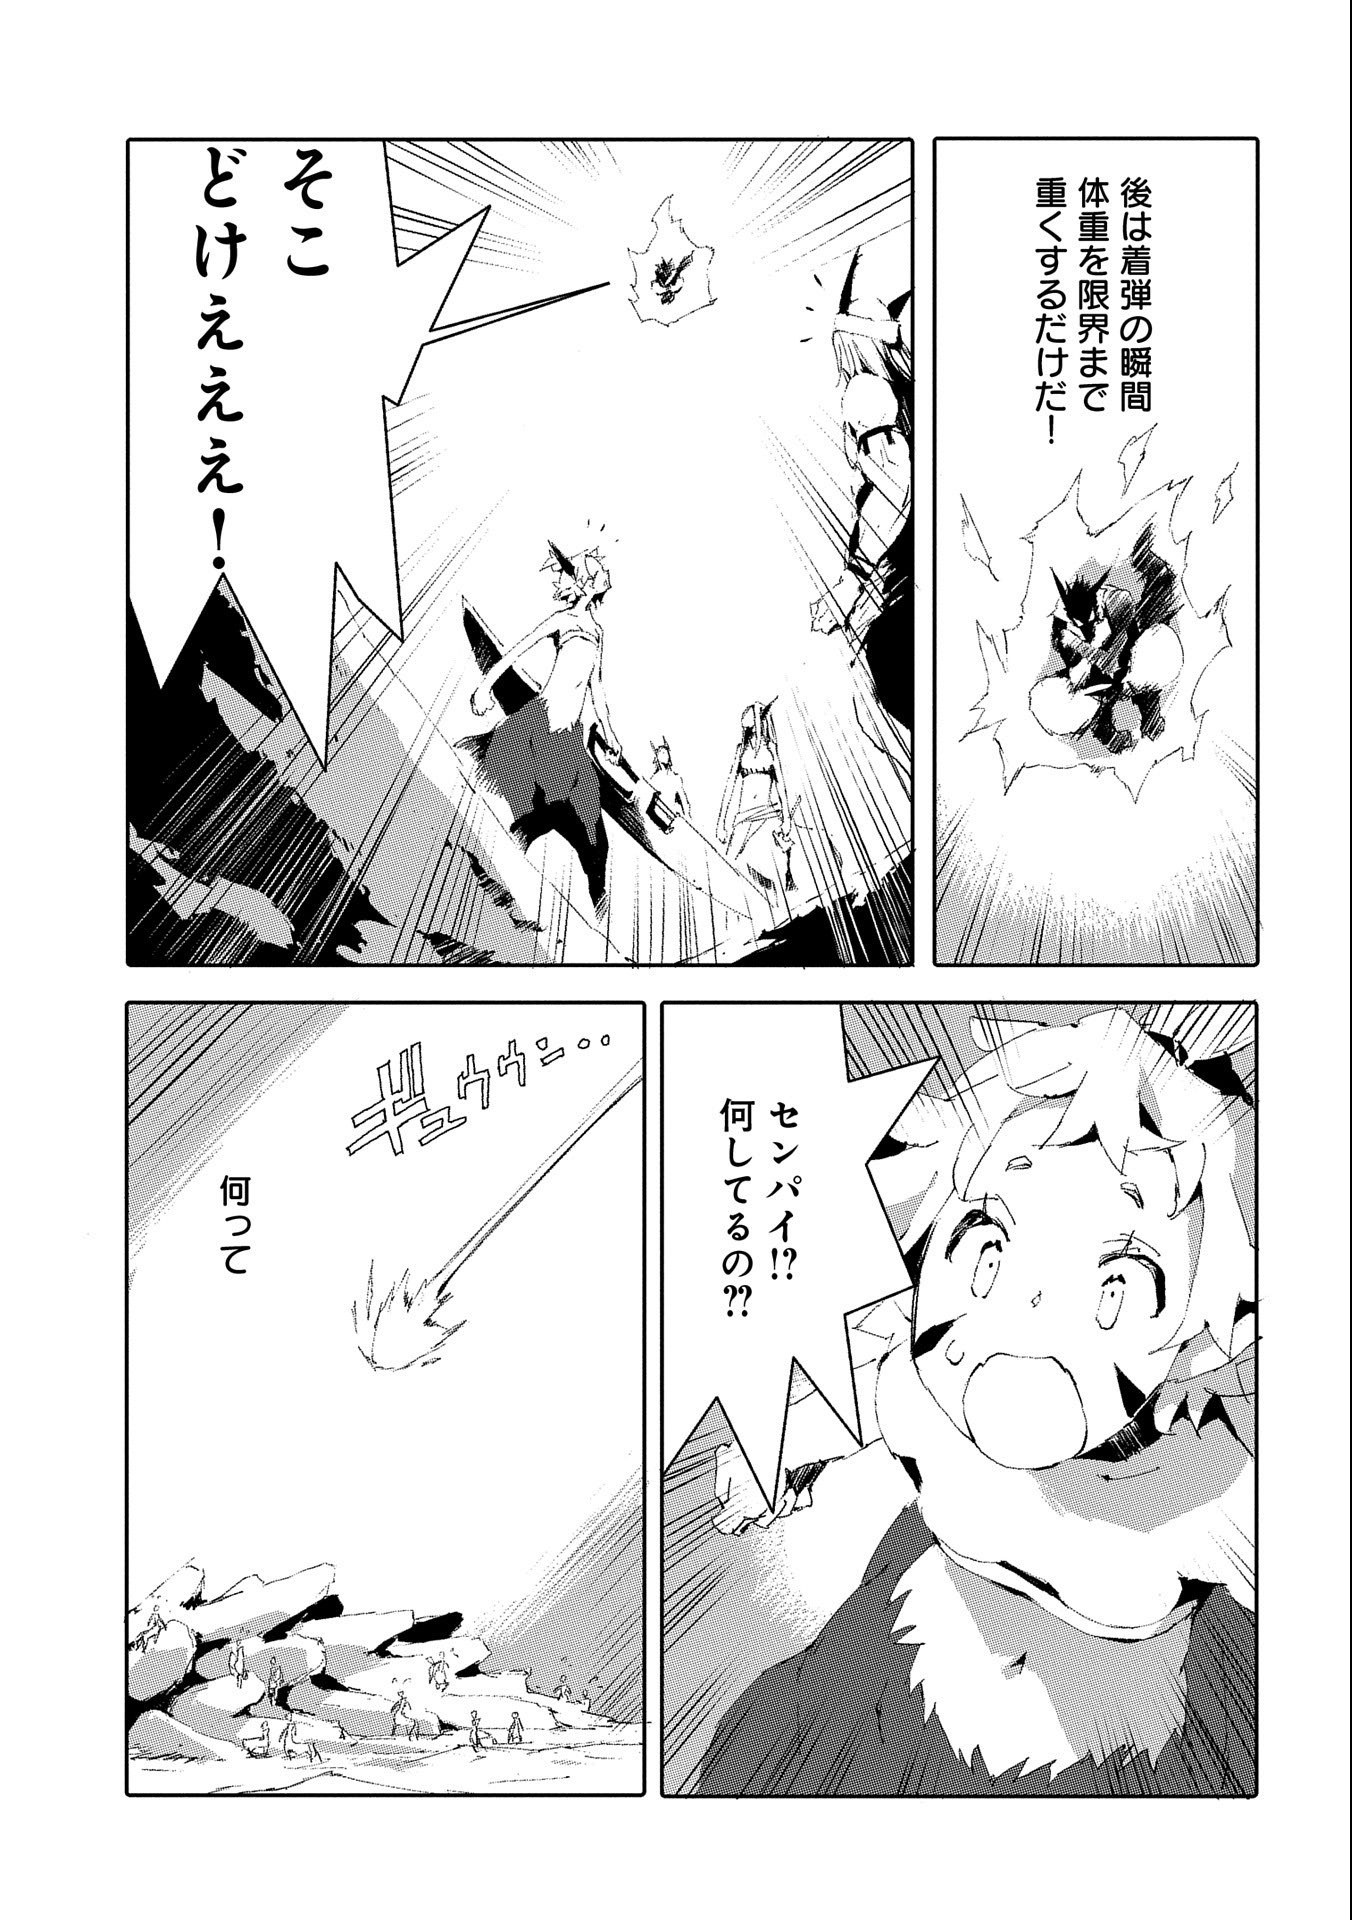 人狼への転生、魔王の副官 ~はじまりの章~ Chapter 47 - Page 15